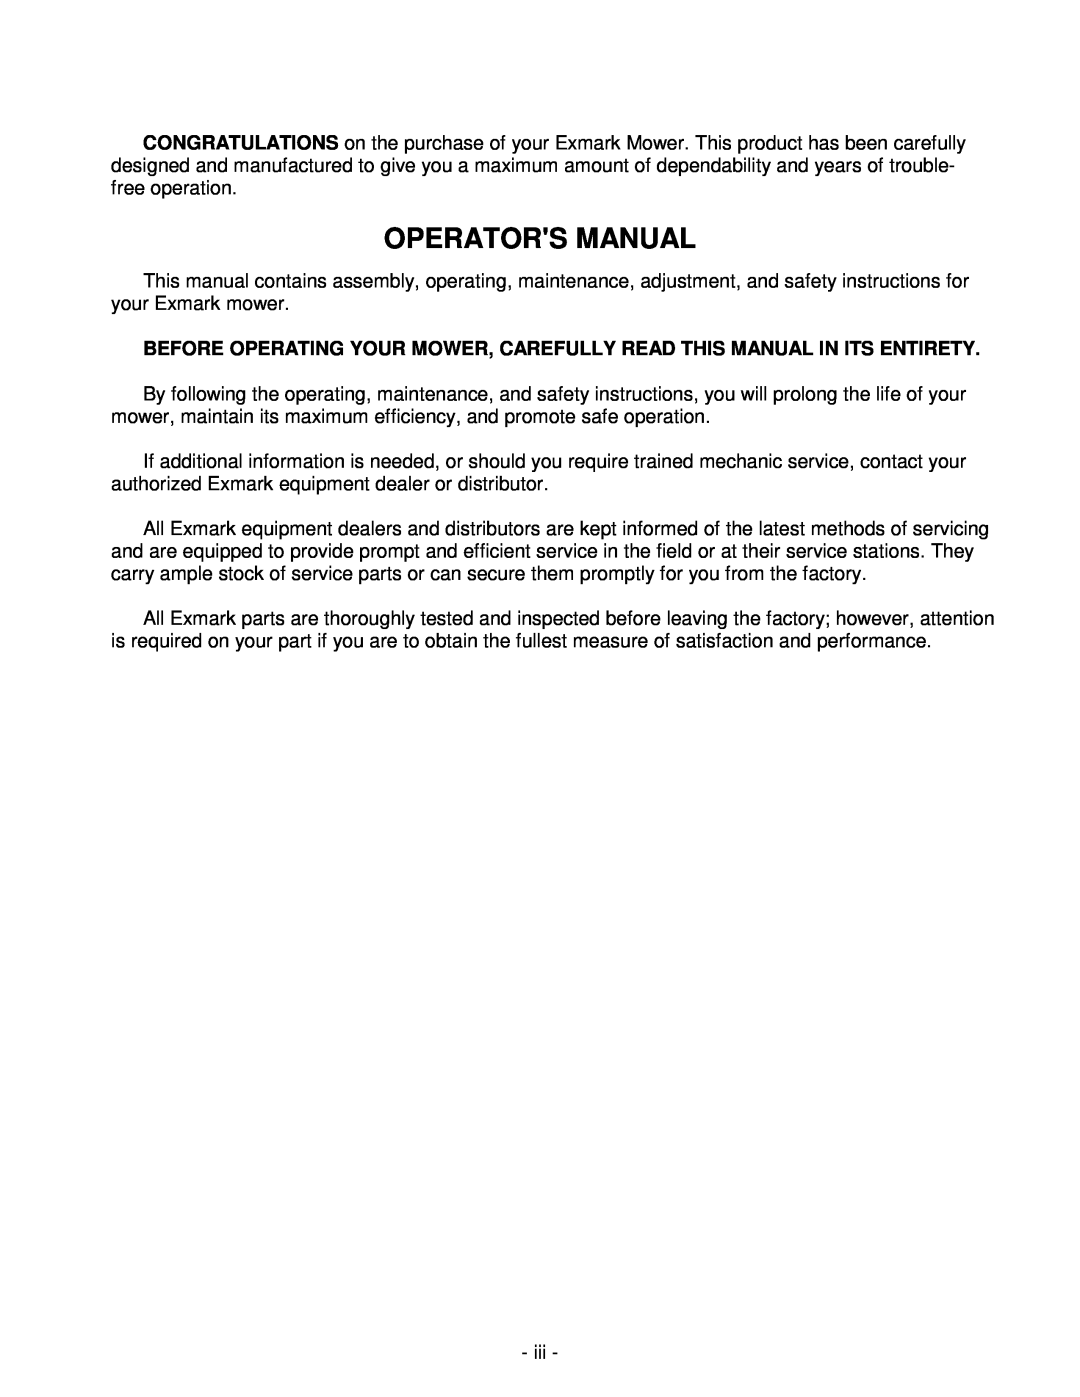 Exmark Metro 21 Series manual Operators Manual 